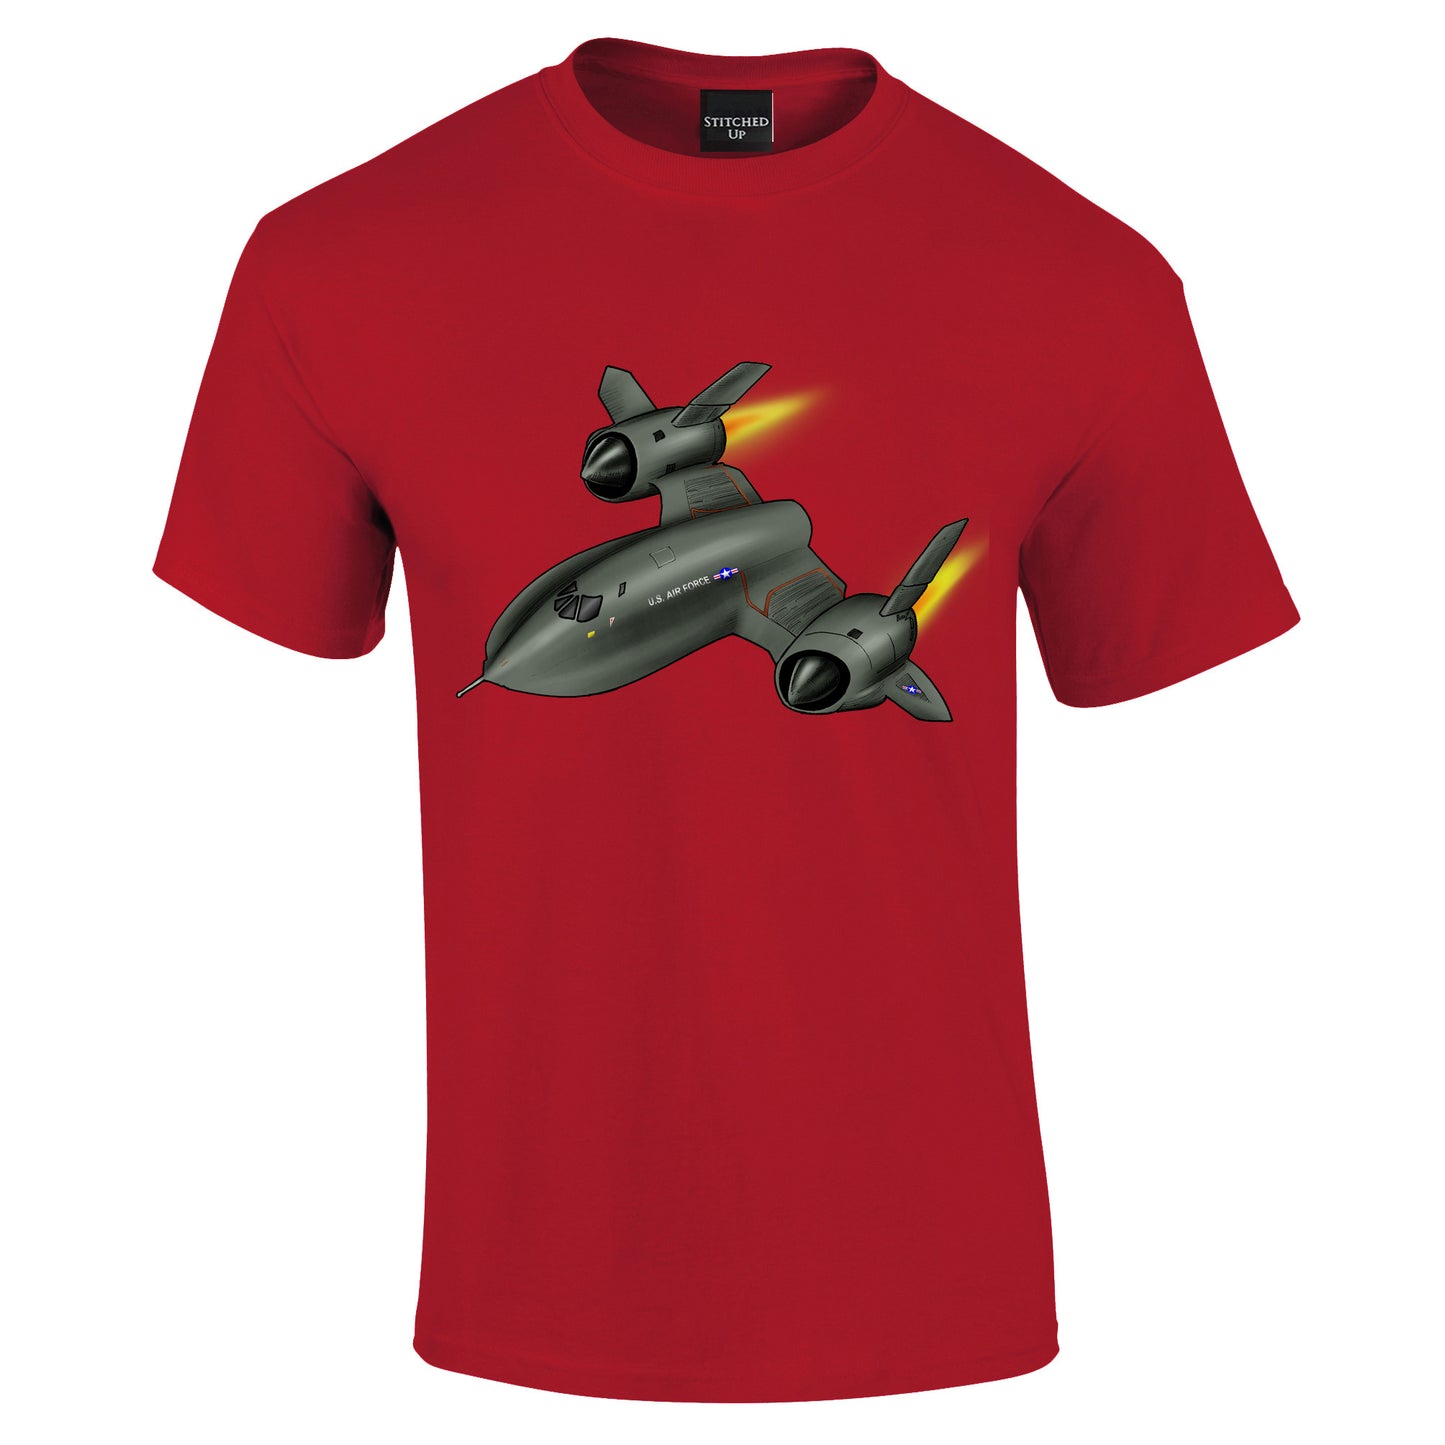 Blackbird SR71 Aircraft T-Shirt